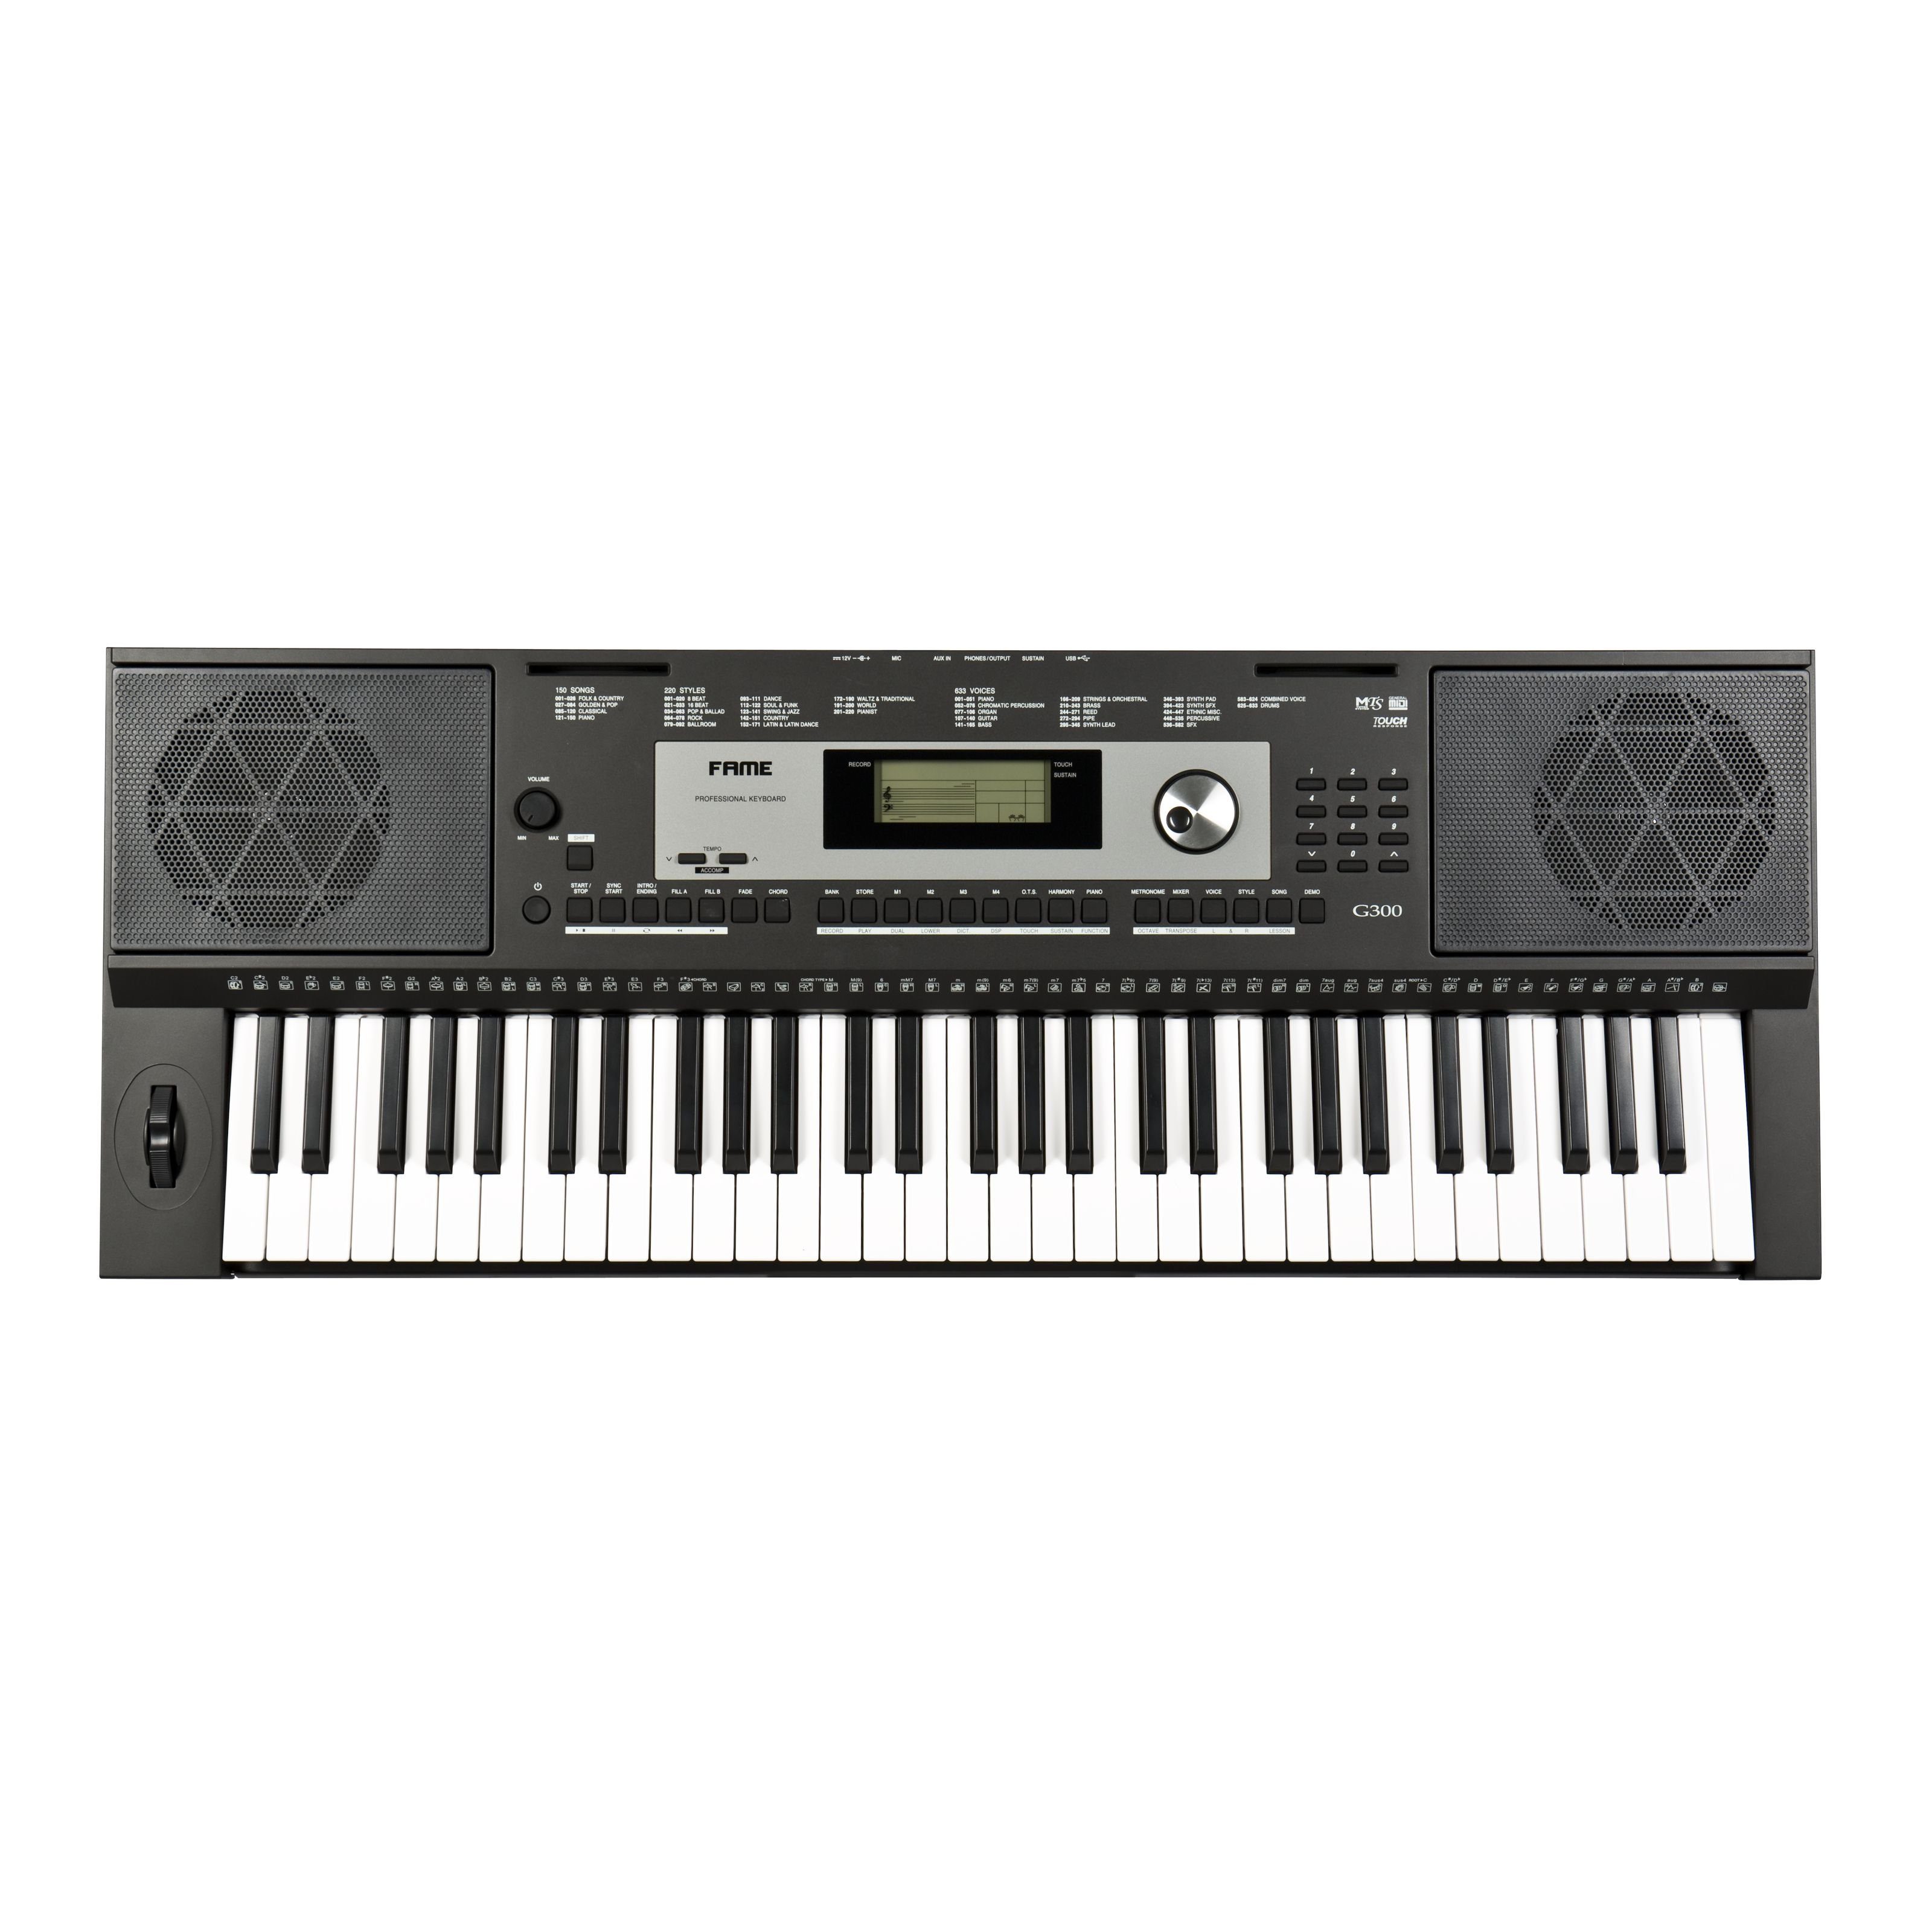 FAME Home-Keyboard (G-300 Keyboard, E-Piano mit 128-facher Polyphonie, 61 Tasten, 220 Styles, 633 Sounds, anschlagdynamischer Klaviatur, 150 Songs, Lautsprechern und Hammermechanik, Schwarz), G-300 Keyboard, E-Piano, anschlagdynamische Klaviatur